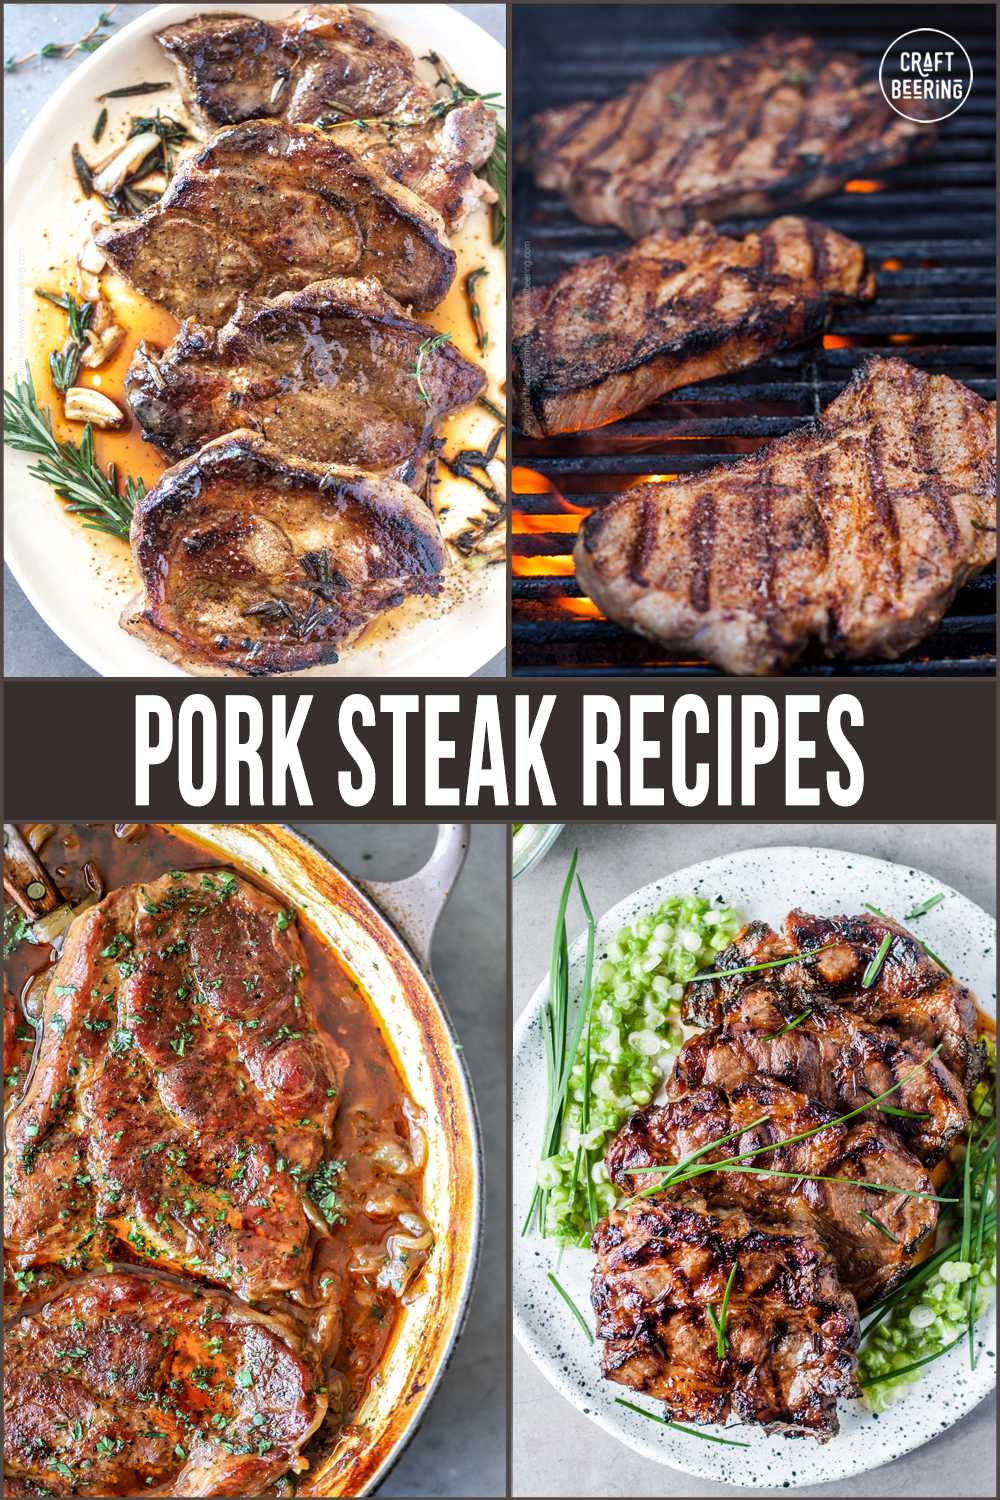 Pork steak recipes - delicious ways to cook pork steak